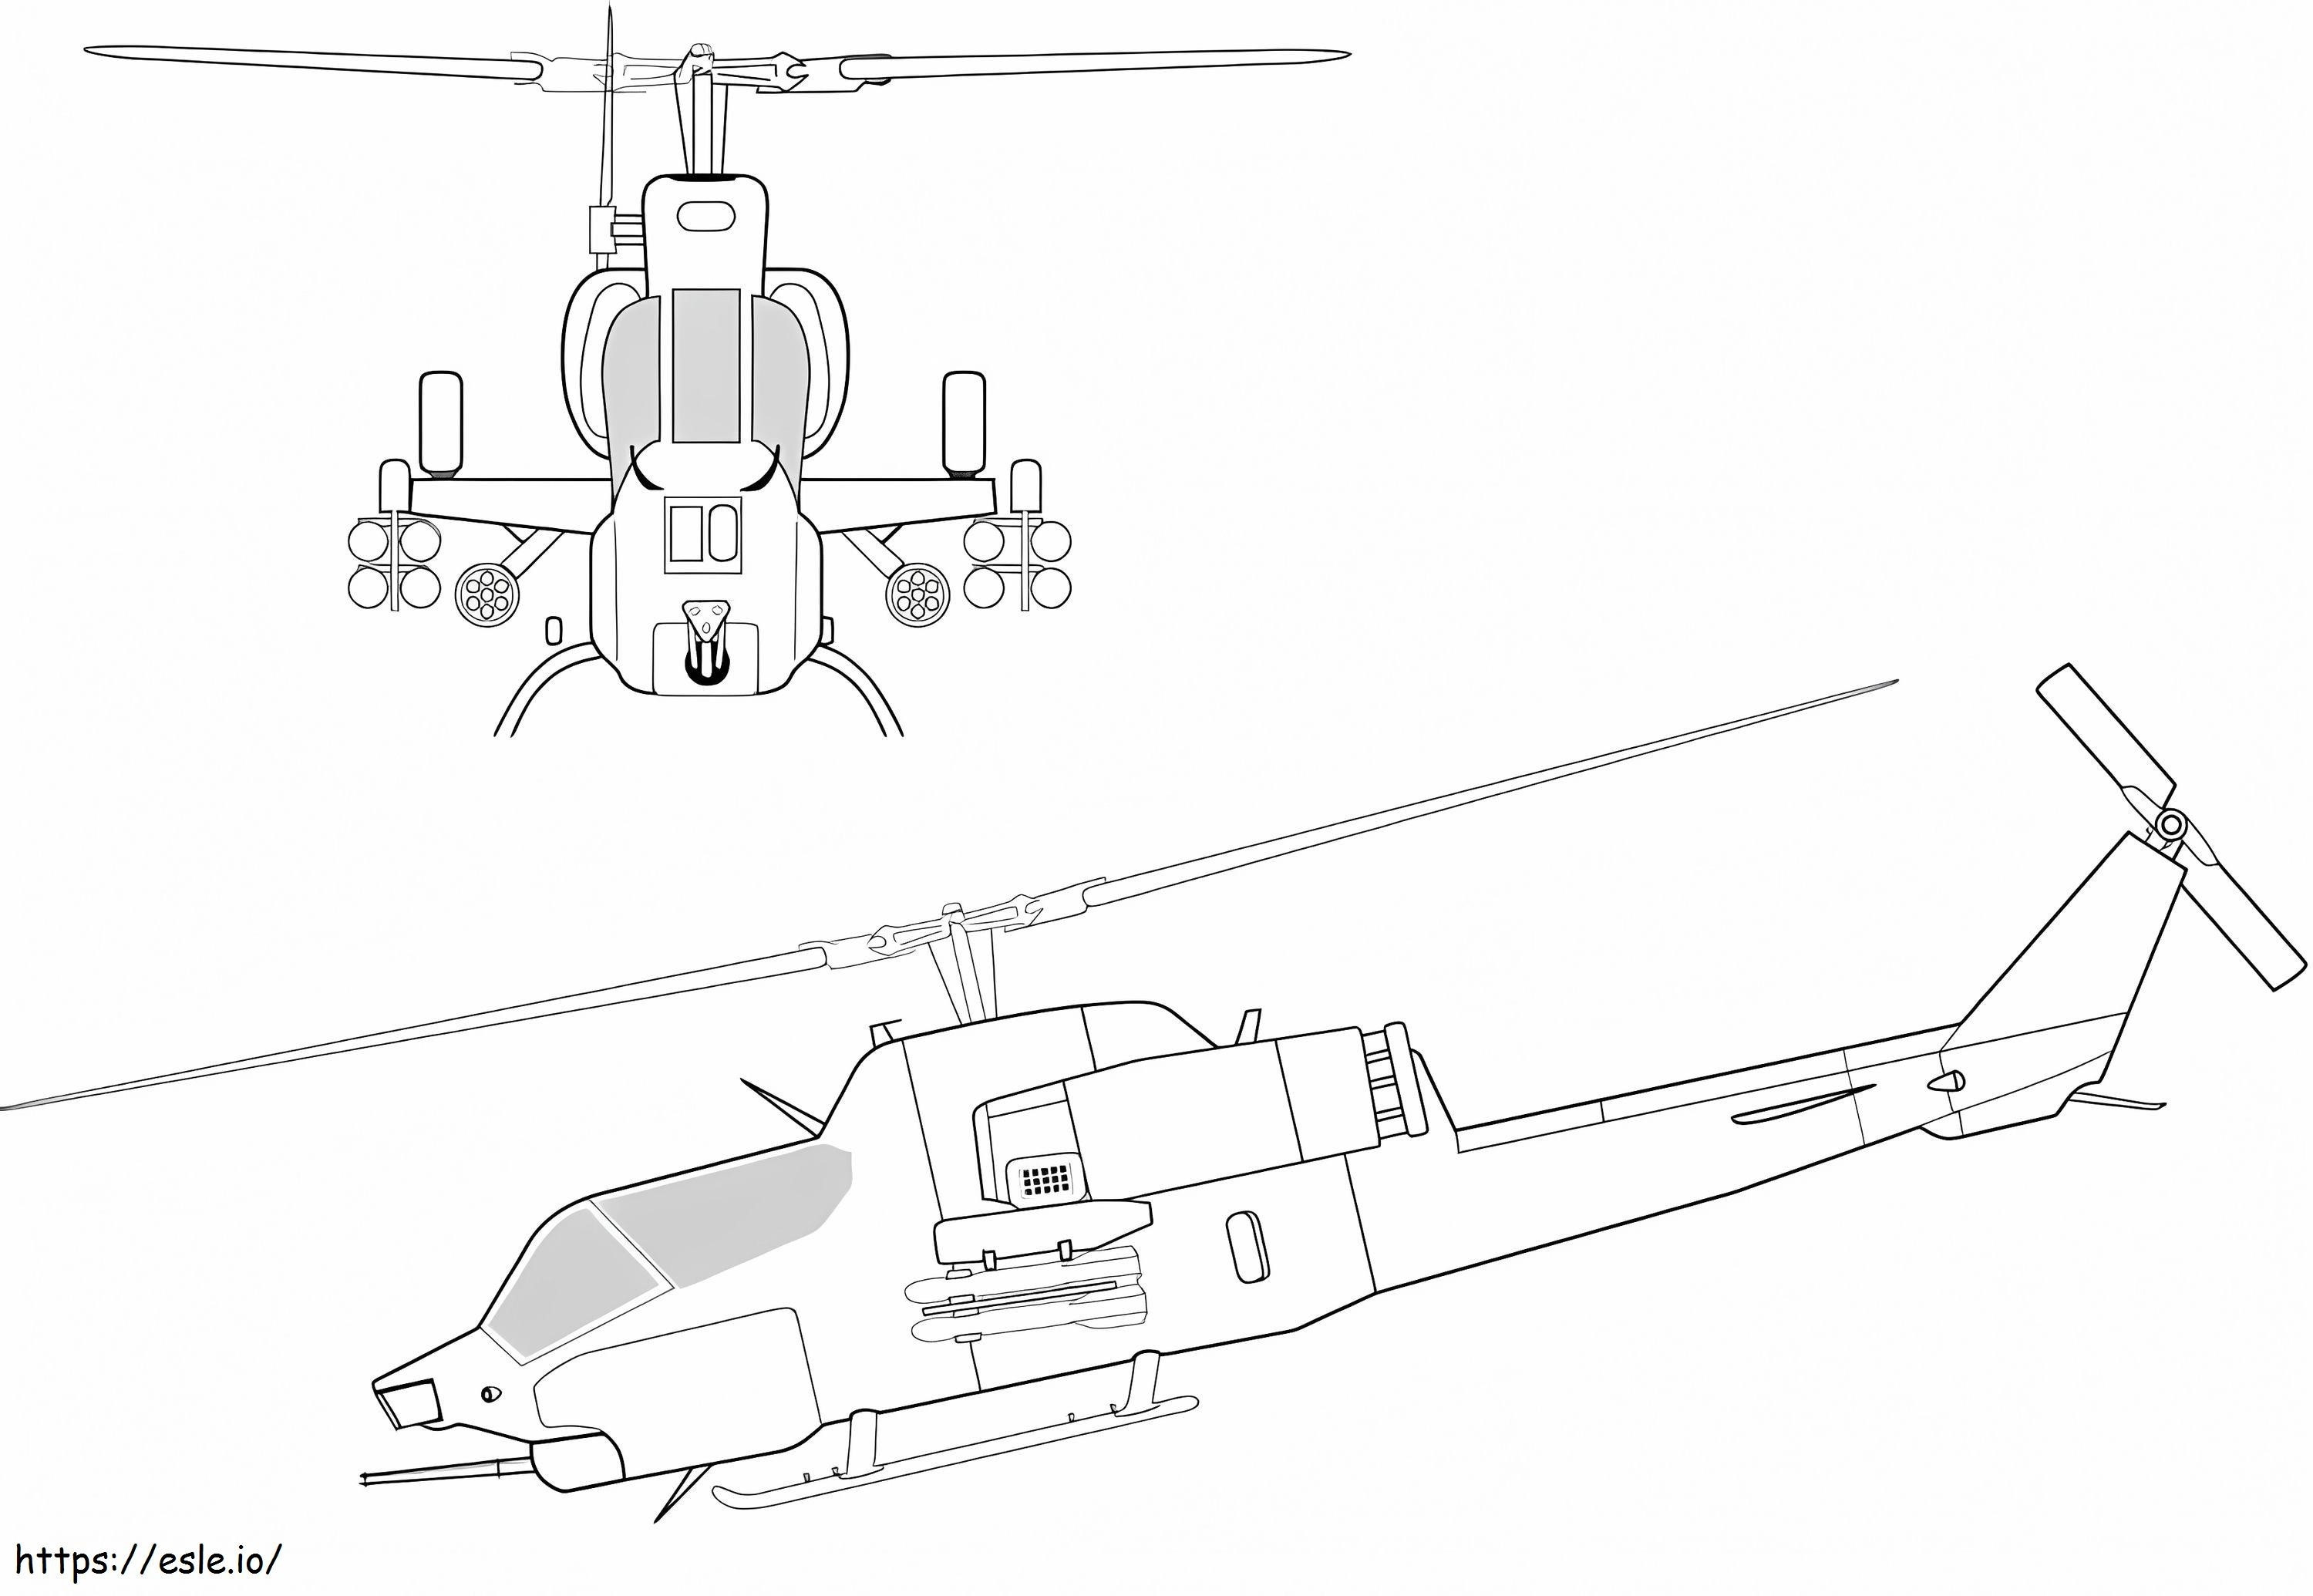 Zwei Hubschrauber ausmalbilder